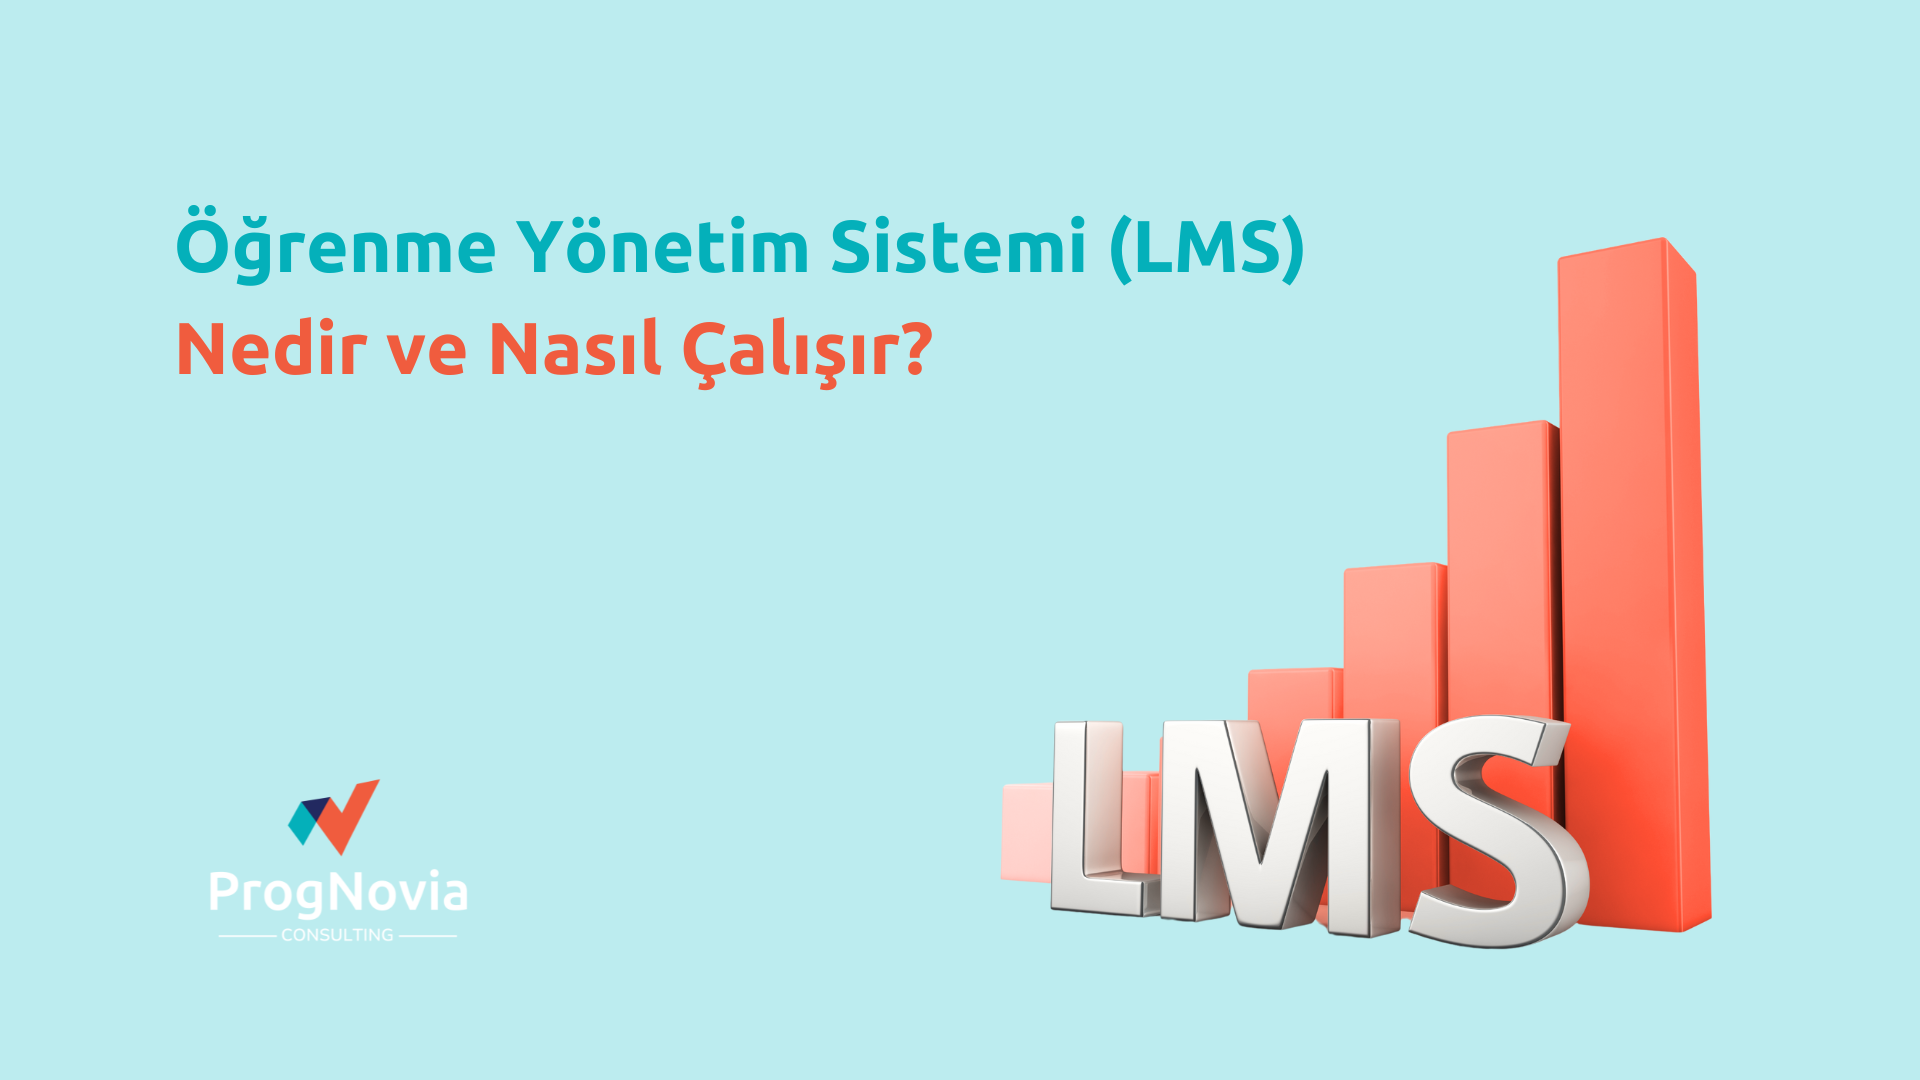 Öğrenme Yönetim Sistemi LMS nedir Prognovia